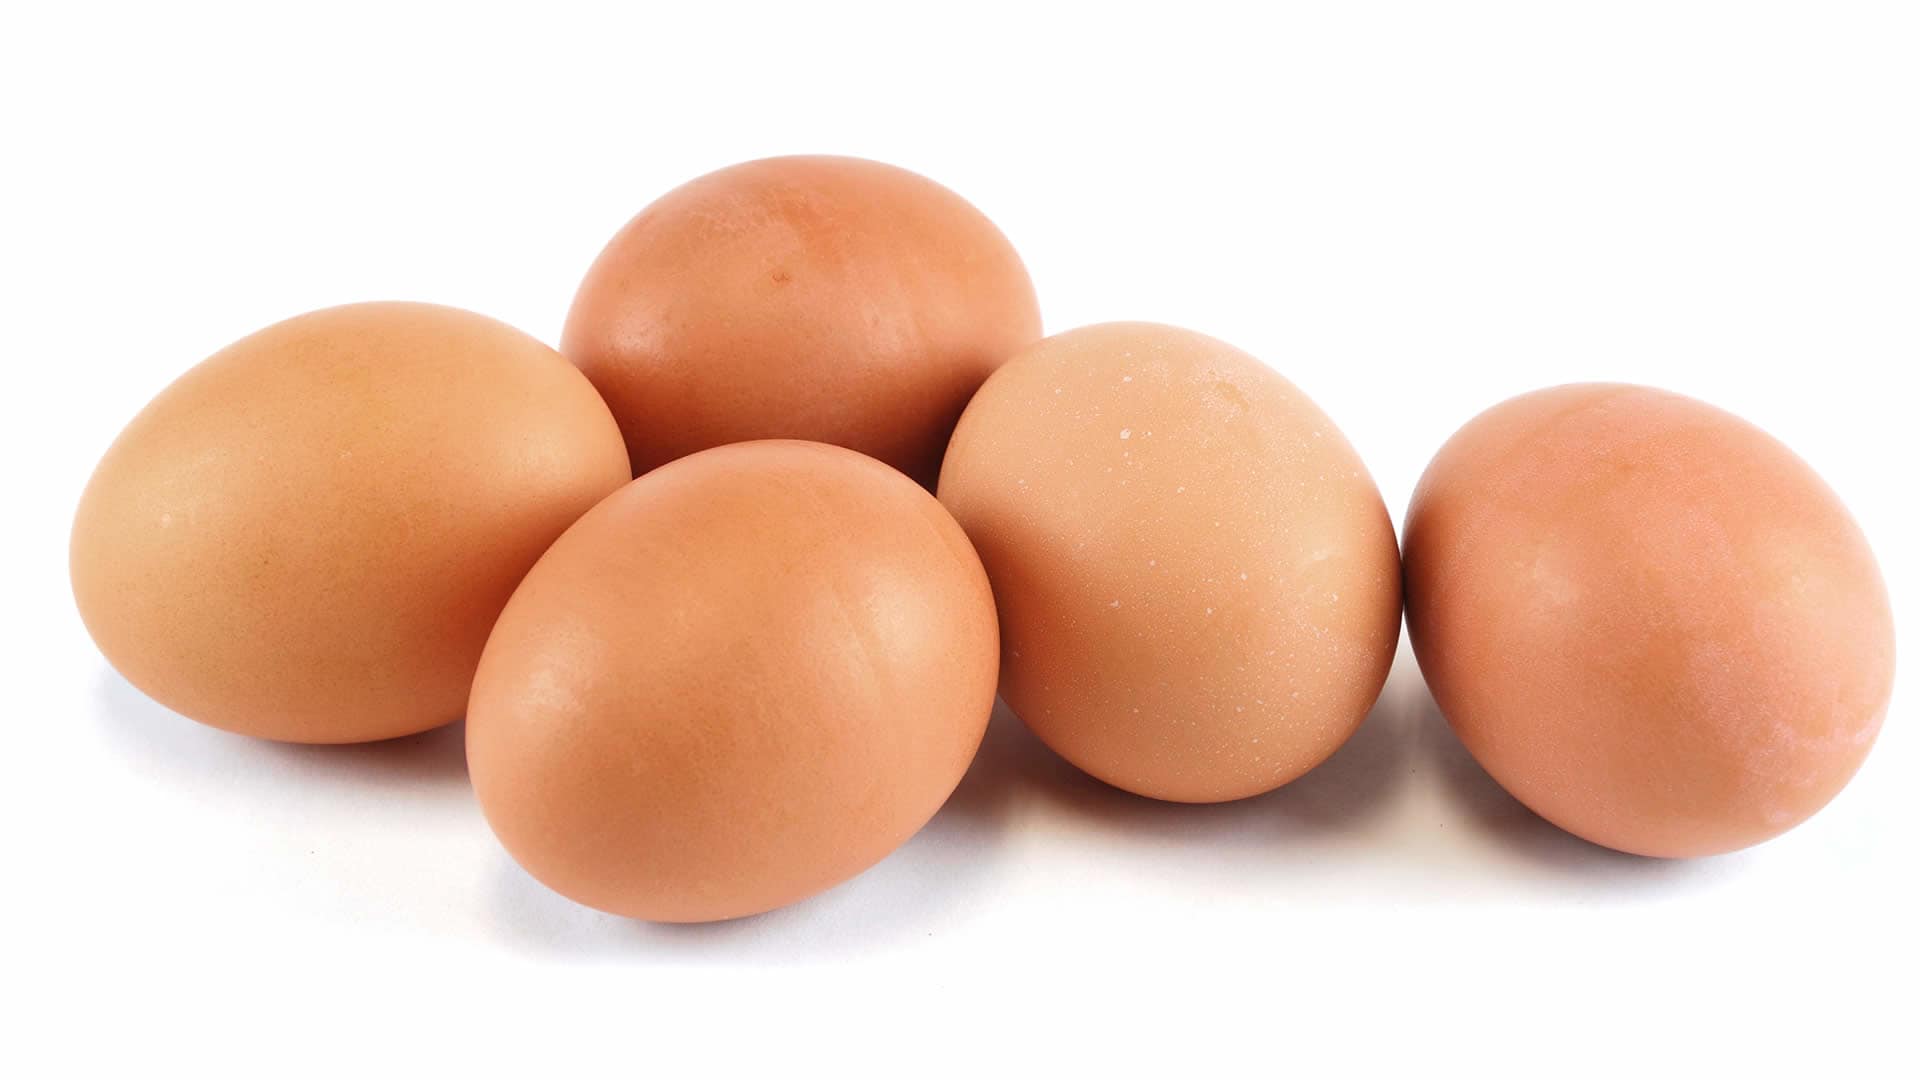 La Gestione Delle Uova Da Parte Degli Osa Un Affascinante Diatriba Isq Alimenti